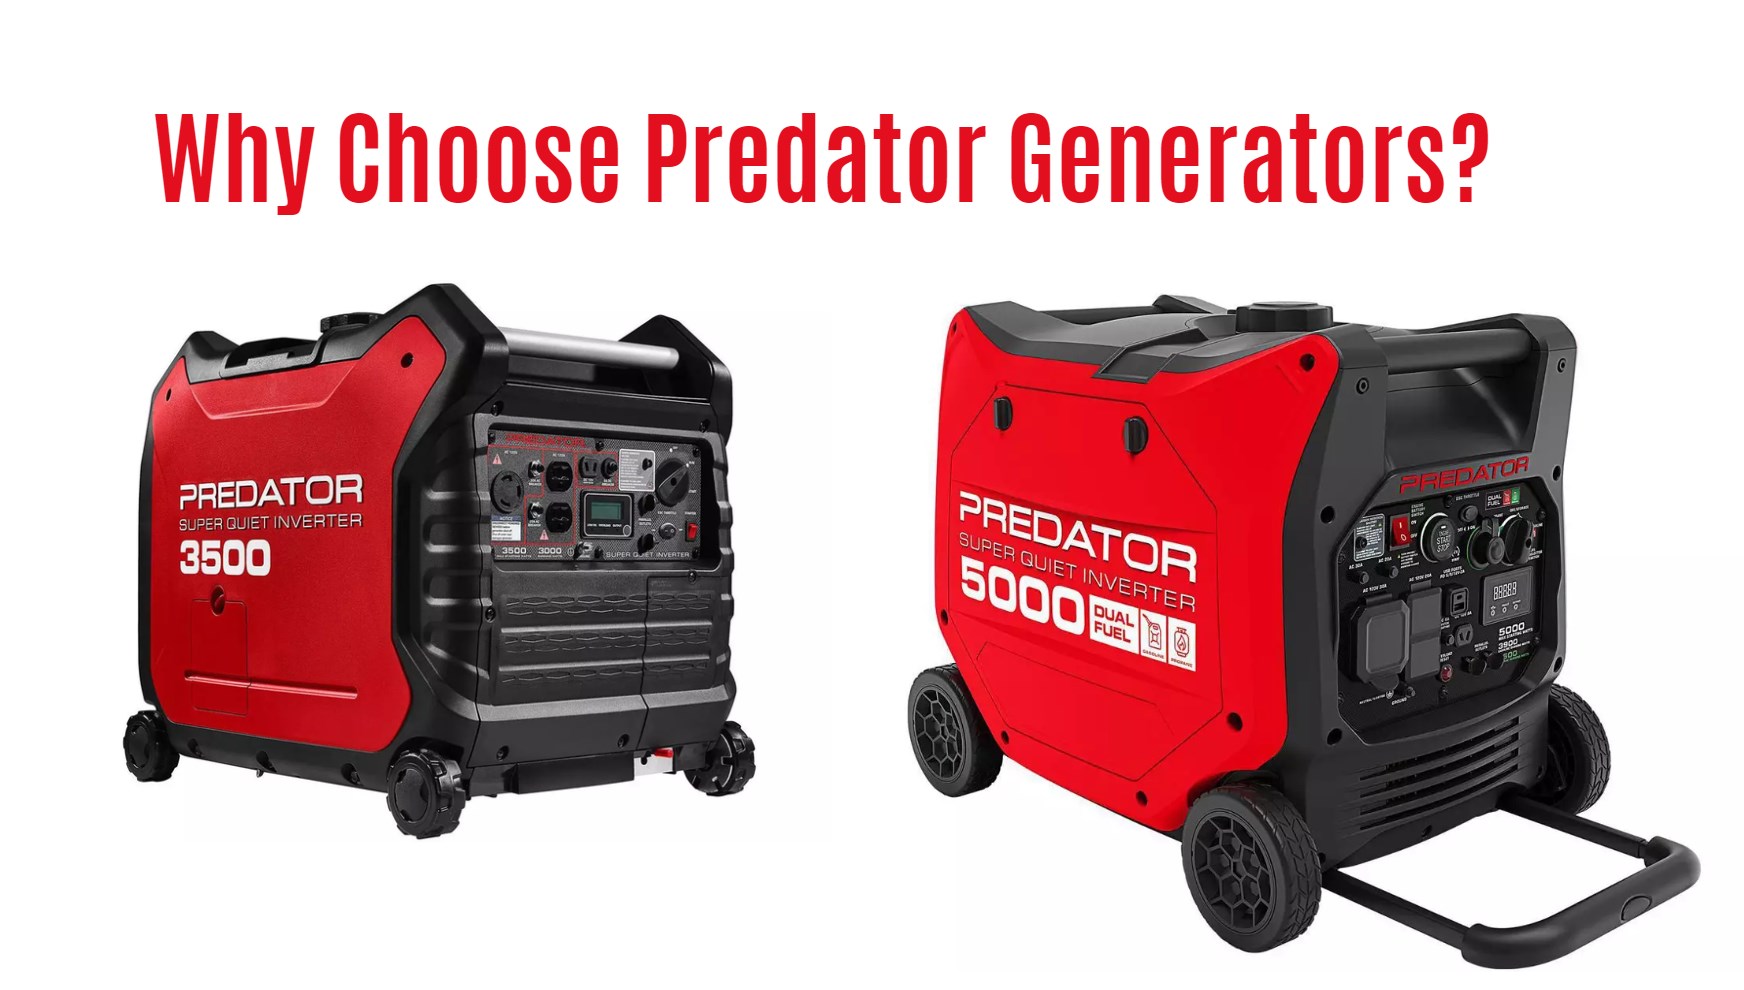 Why Choose Predator Generators?